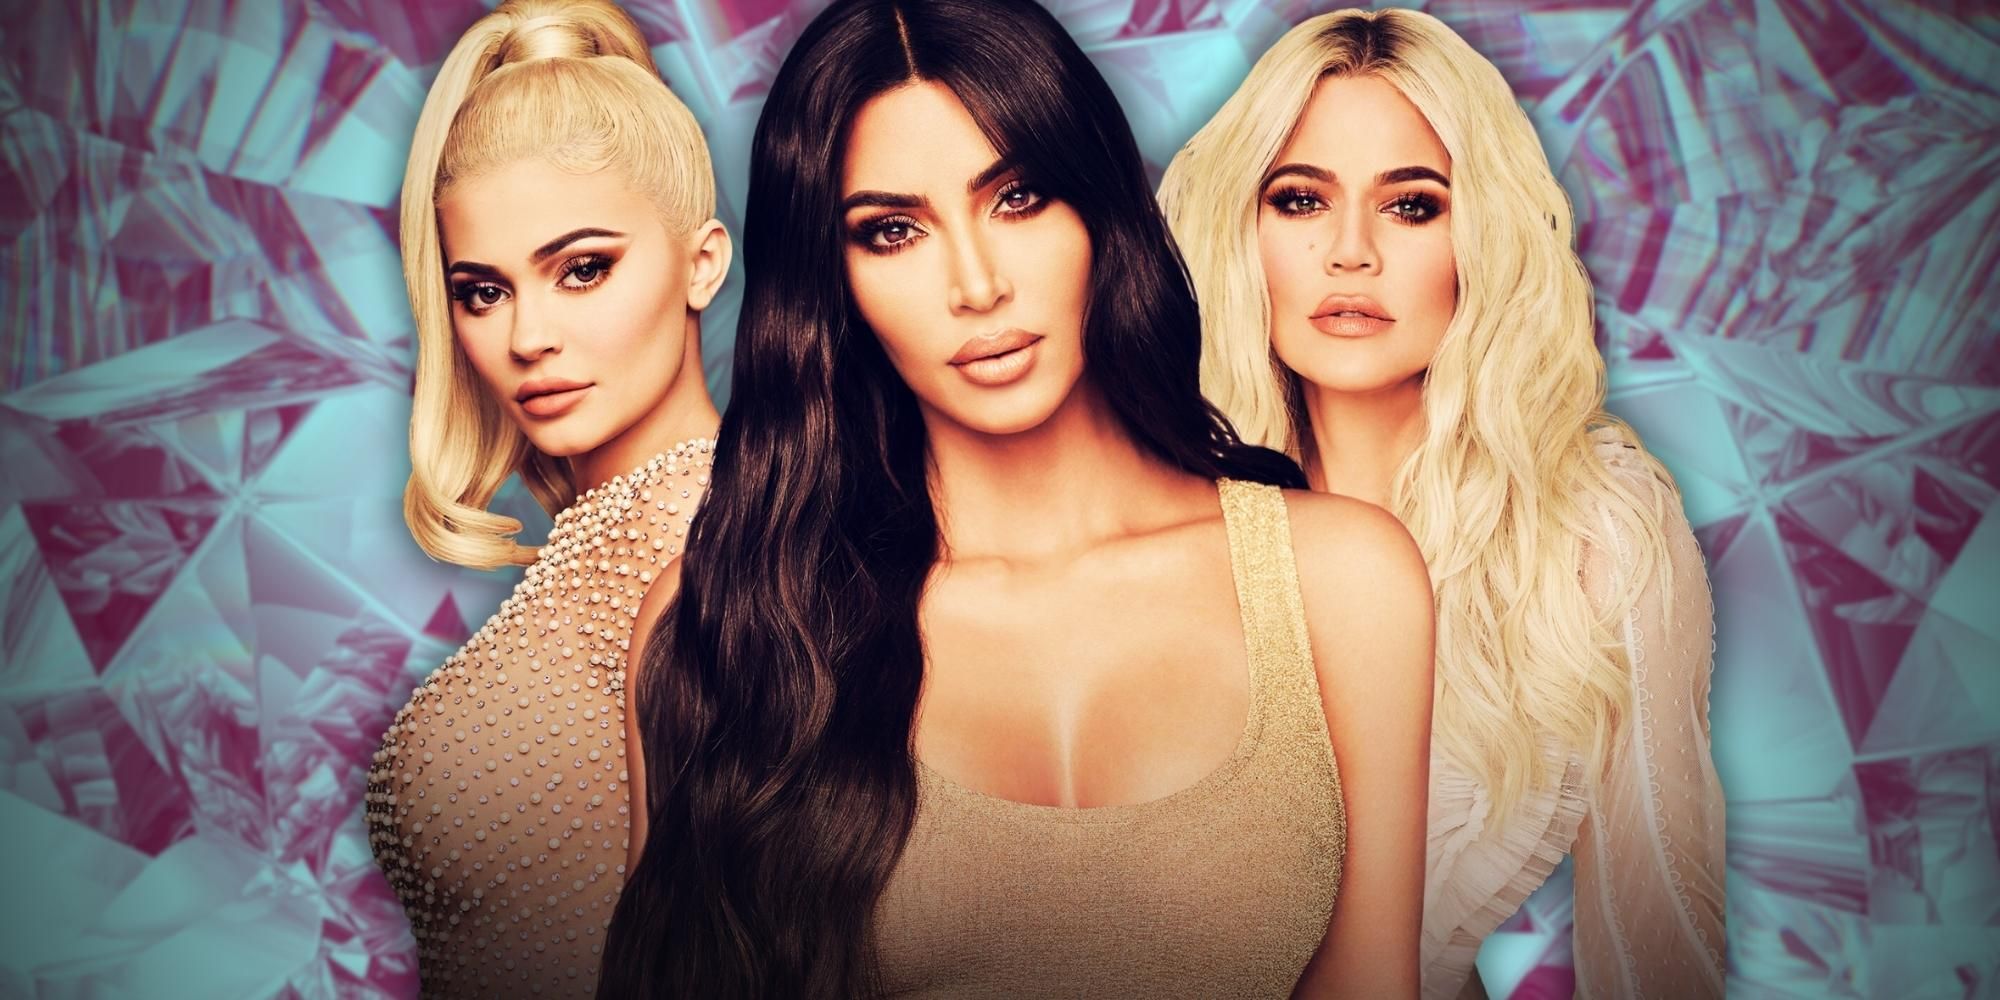 Temporada 3 de The Kardashians: fecha de lanzamiento, reparto, tráiler y todo lo que sabemos